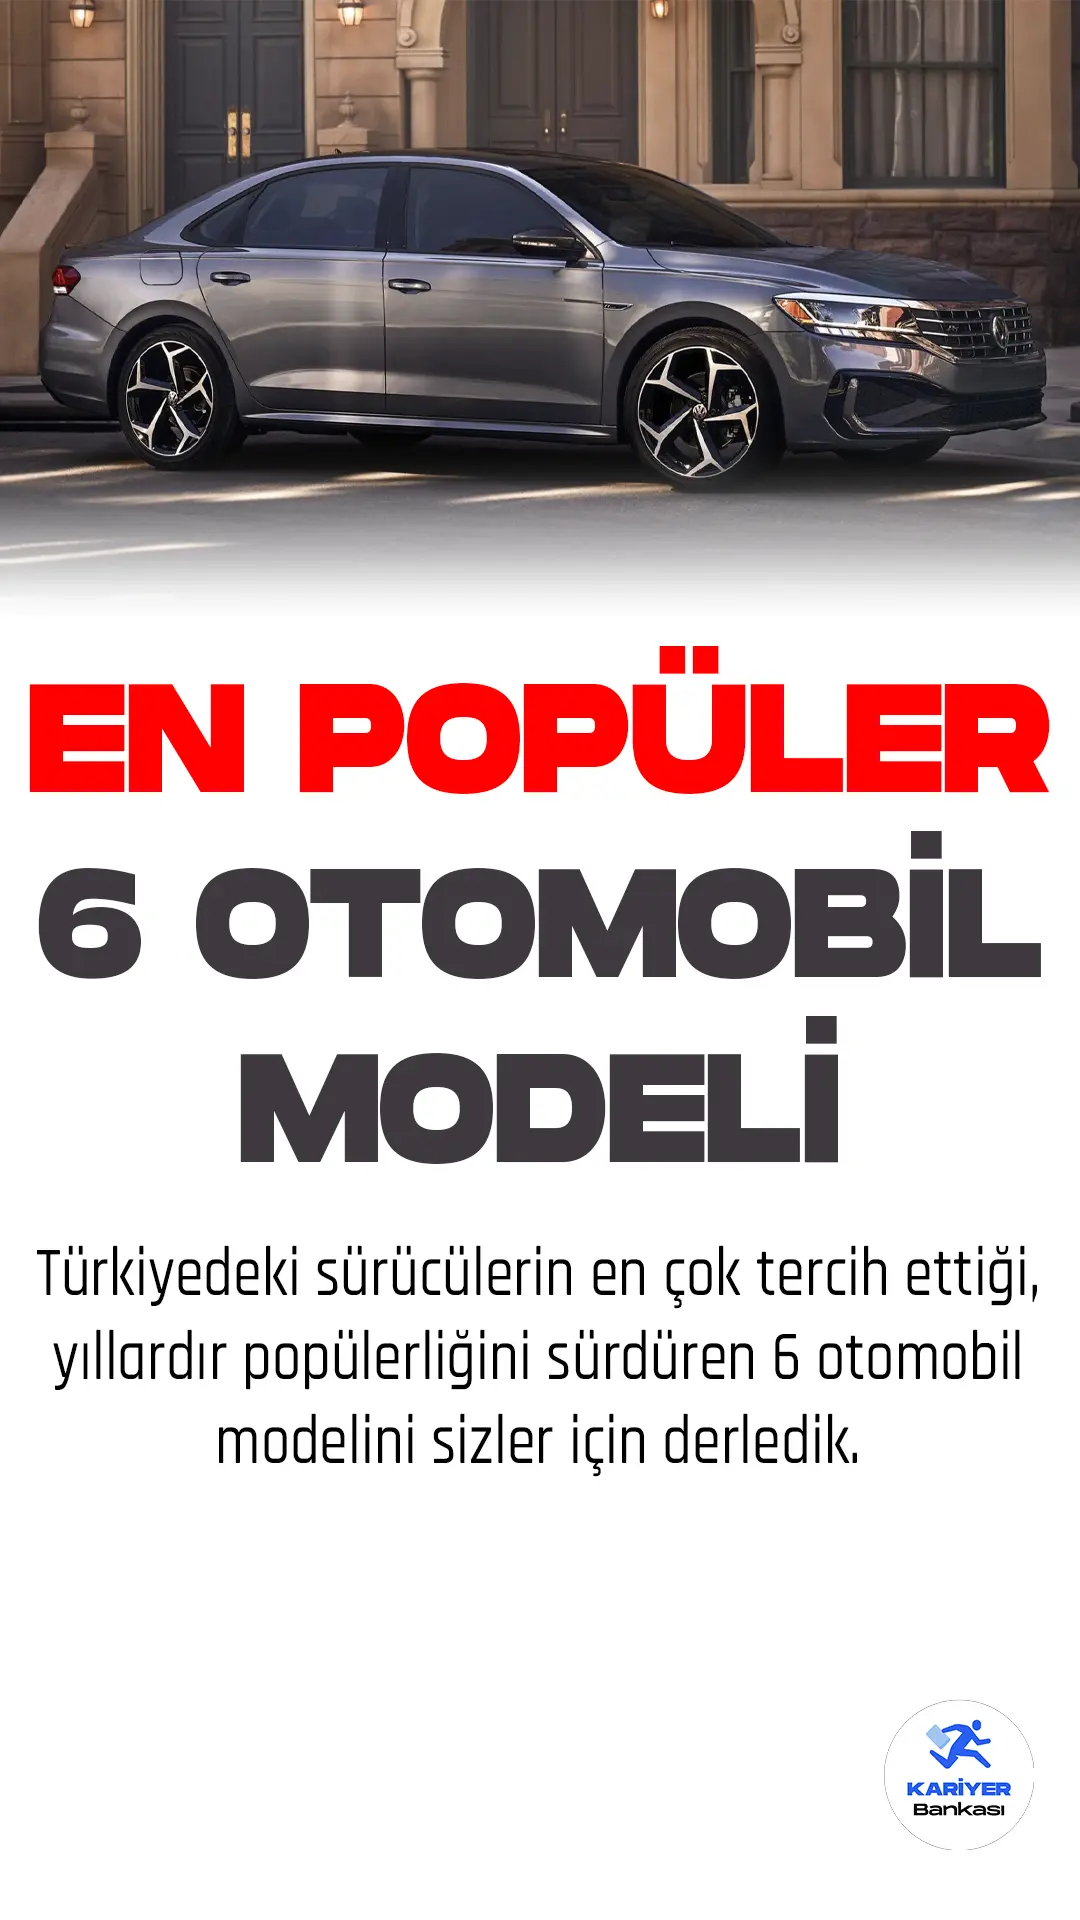 Türkiye'deki en popüler 6 otomobil modeli bu haberimizde.